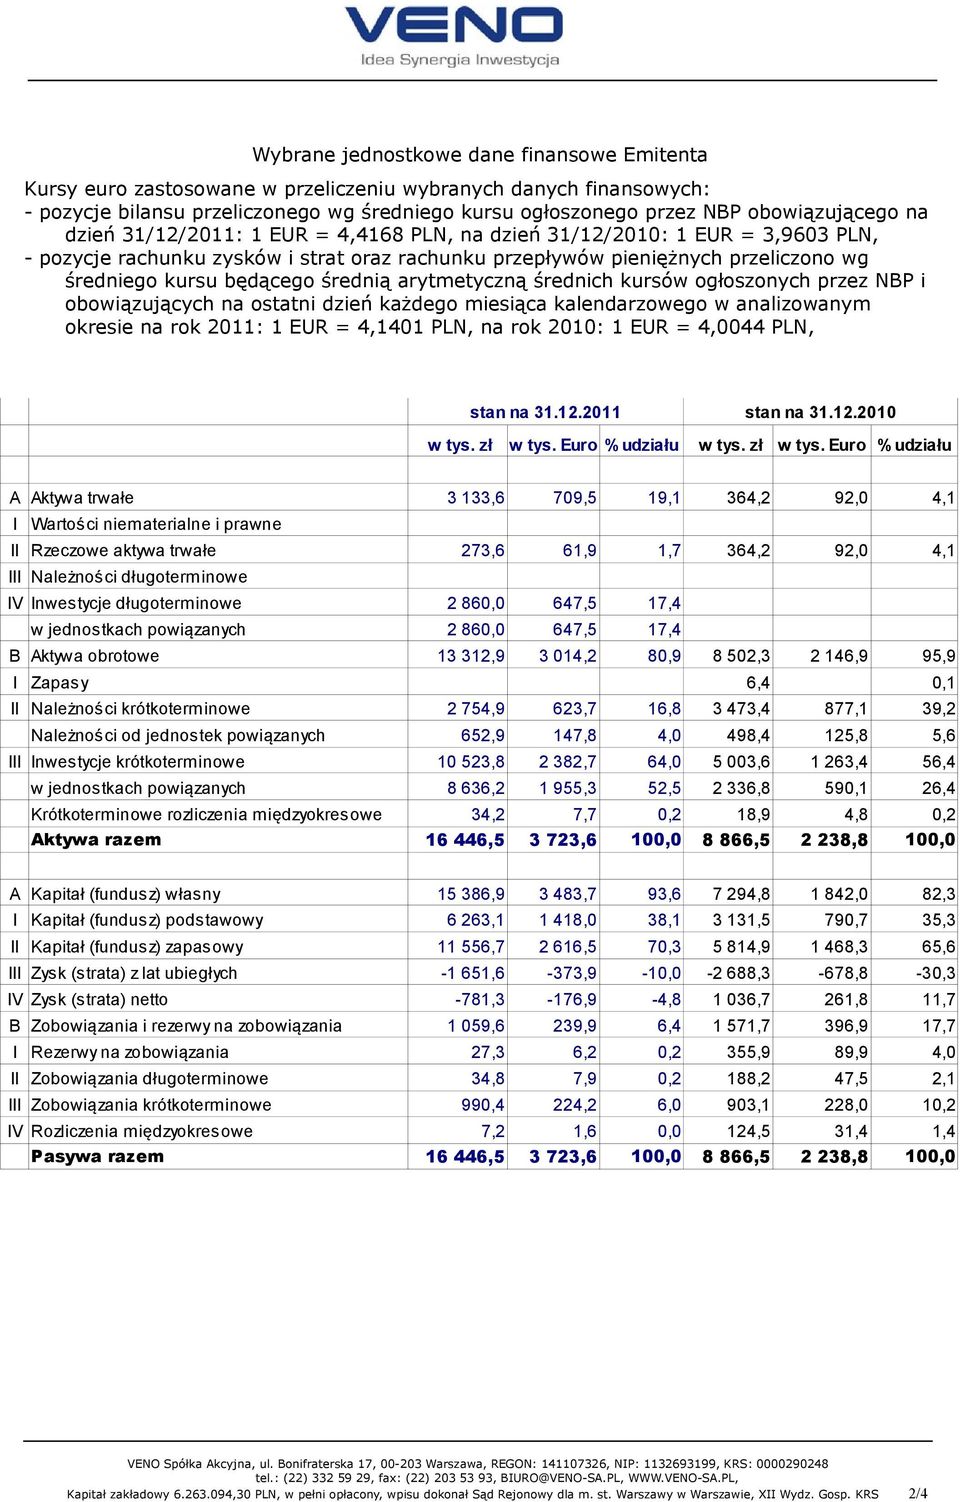 średnią arytmetyczną średnich kursów ogłoszonych przez NBP i obowiązujących na ostatni dzień każdego miesiąca kalendarzowego w analizowanym okresie na rok 2011: 1 EUR = 4,1401 PLN, na rok 2010: 1 EUR